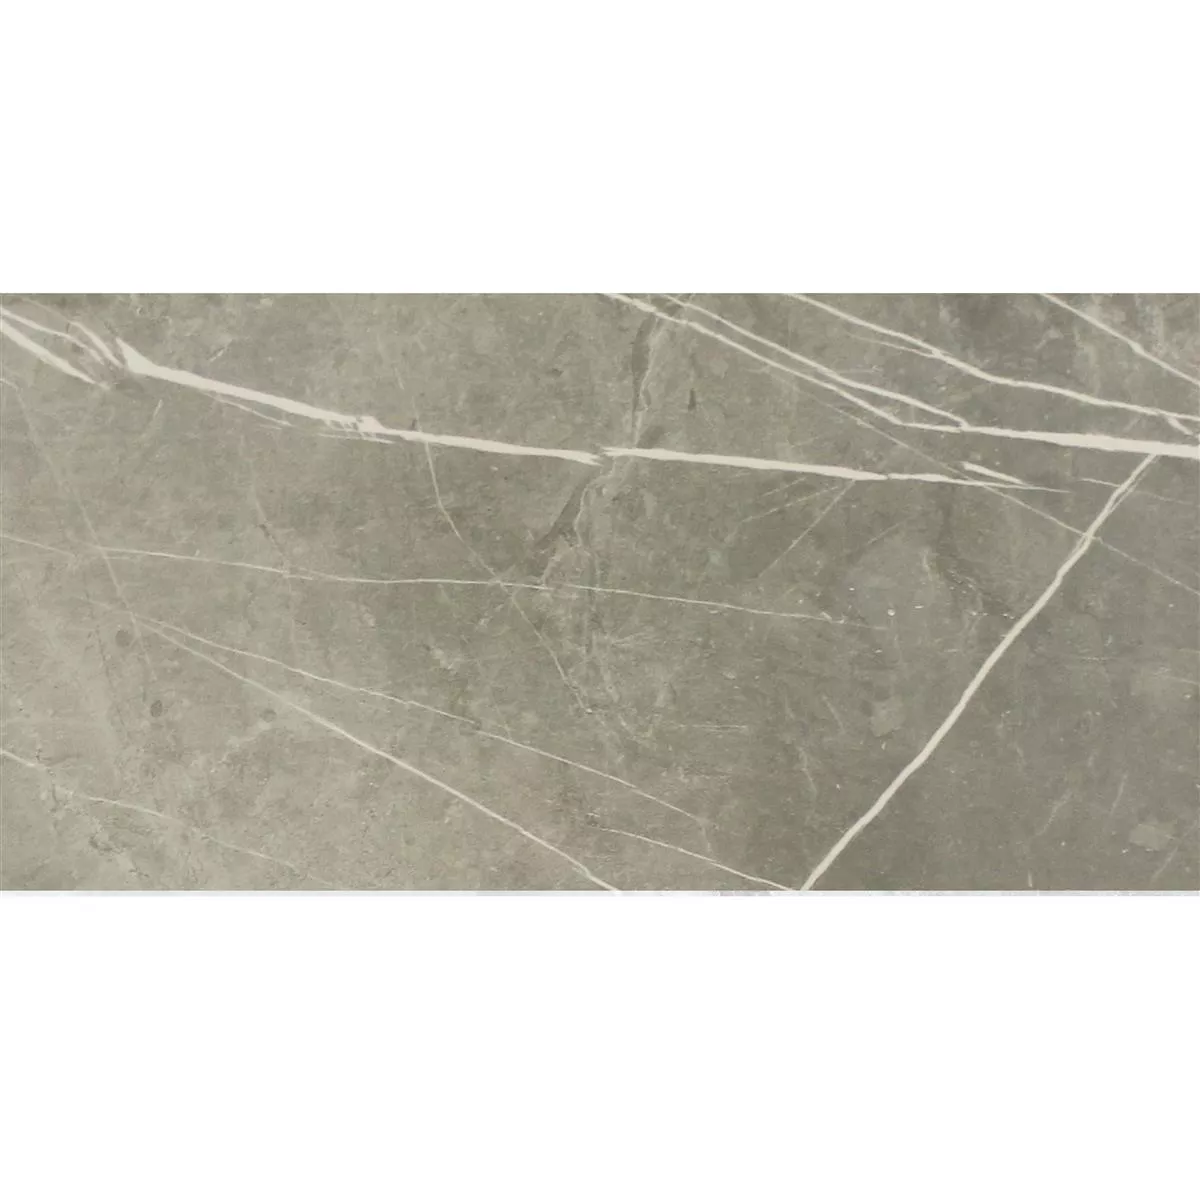 Próbka Płytki Podłogowe Astara Kamień Naturalny Optyka Polerowany Grey 30x60cm